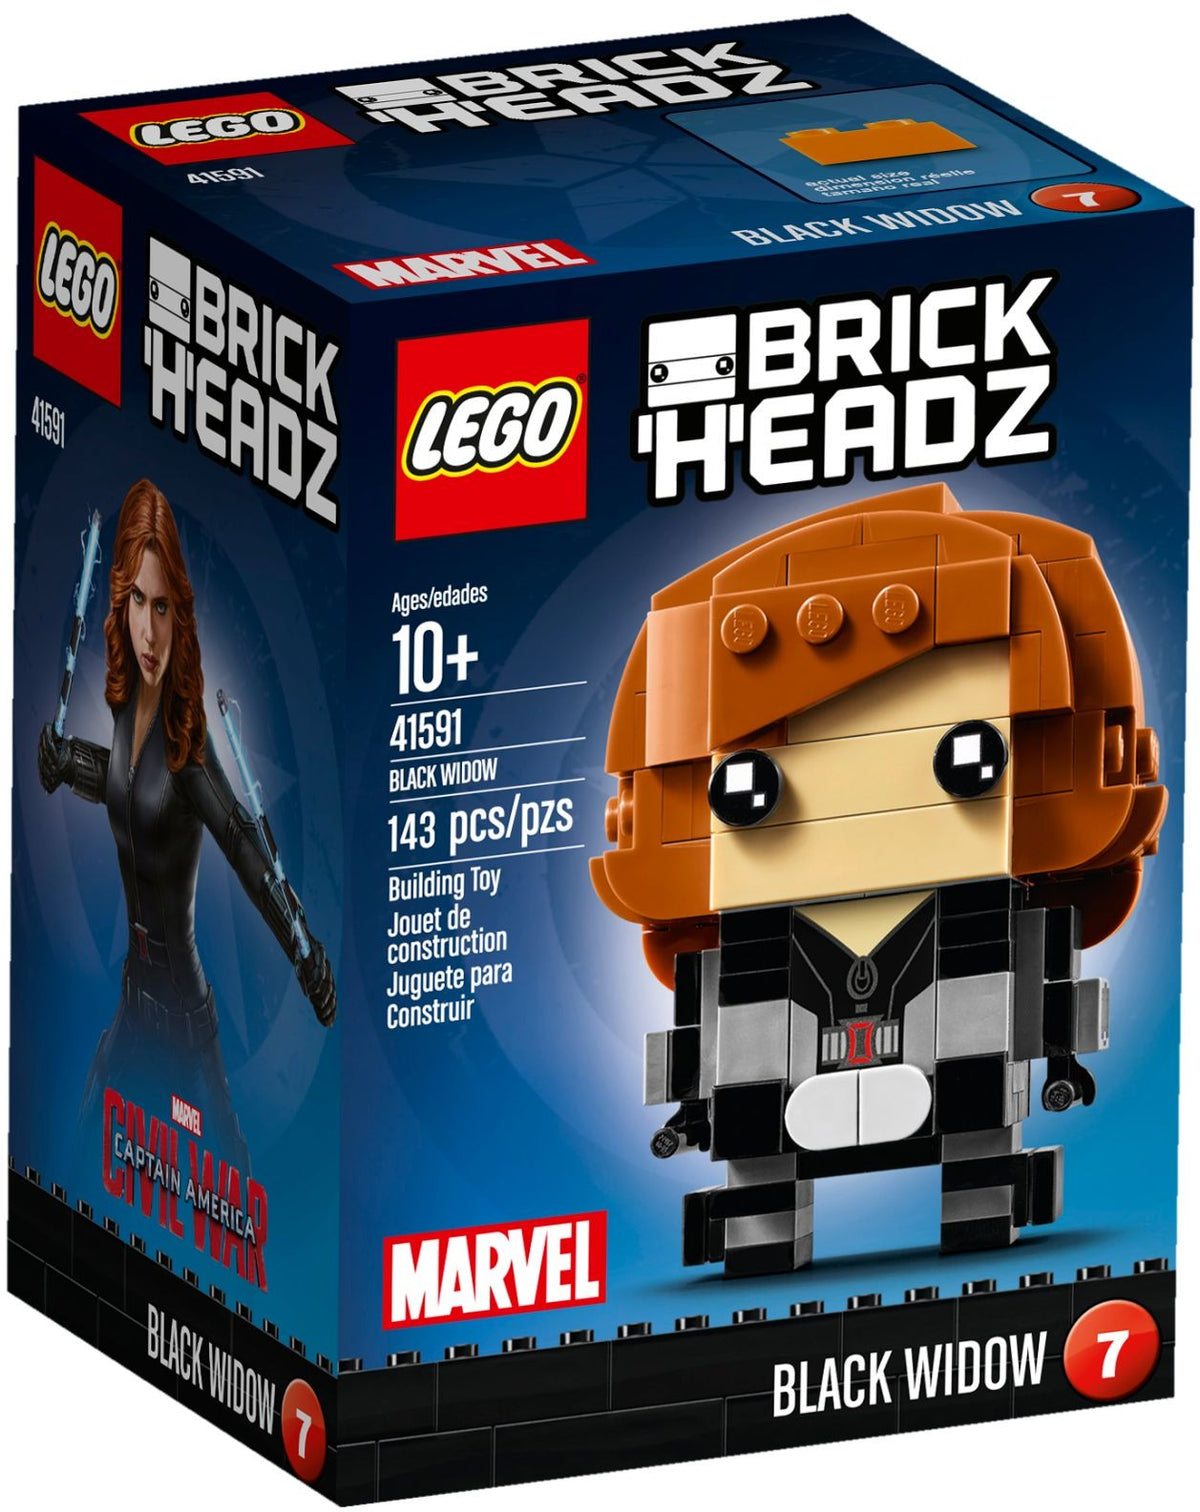 LEGO BrickHeadz Marvel 41591 Black Widow